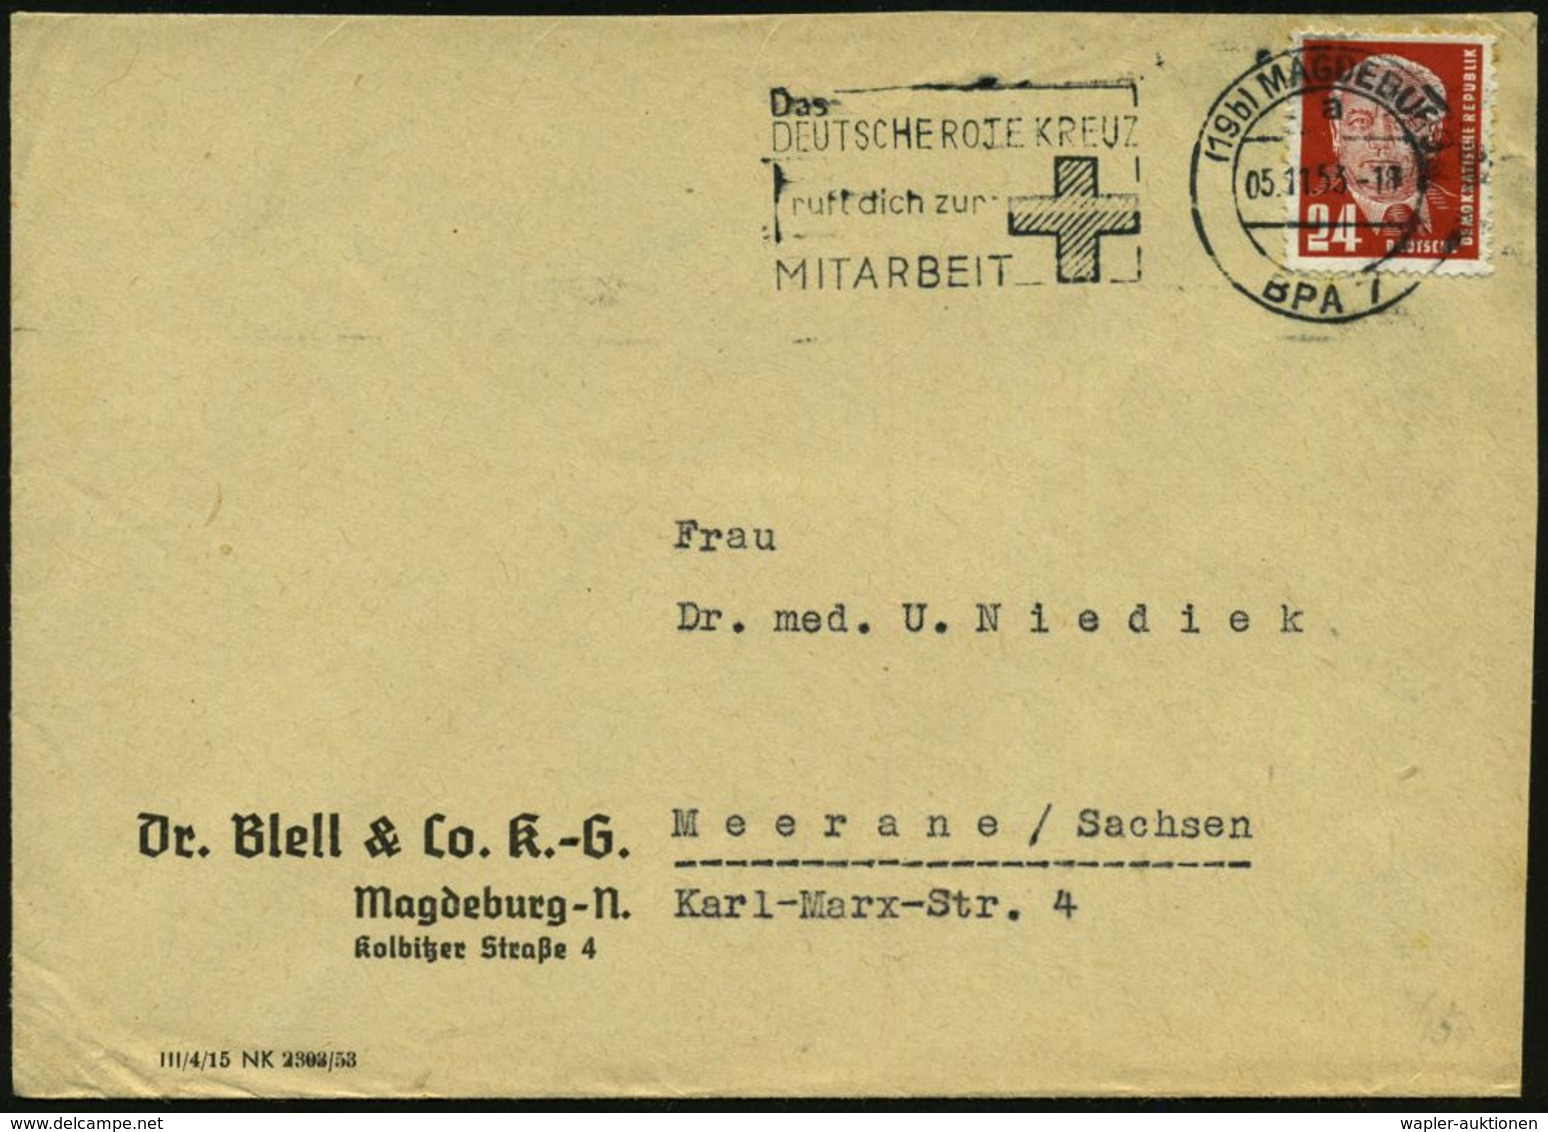 (19b) MAGDEBURG / A/ BPA 7/ Das/ DEUTSCHE ROTE KREUZ/ Ruft.. 1953 (5.11.) MWSt (Kreuz) Firmenbf. (Bo.S 651 A , Nur 3 Mon - Rode Kruis